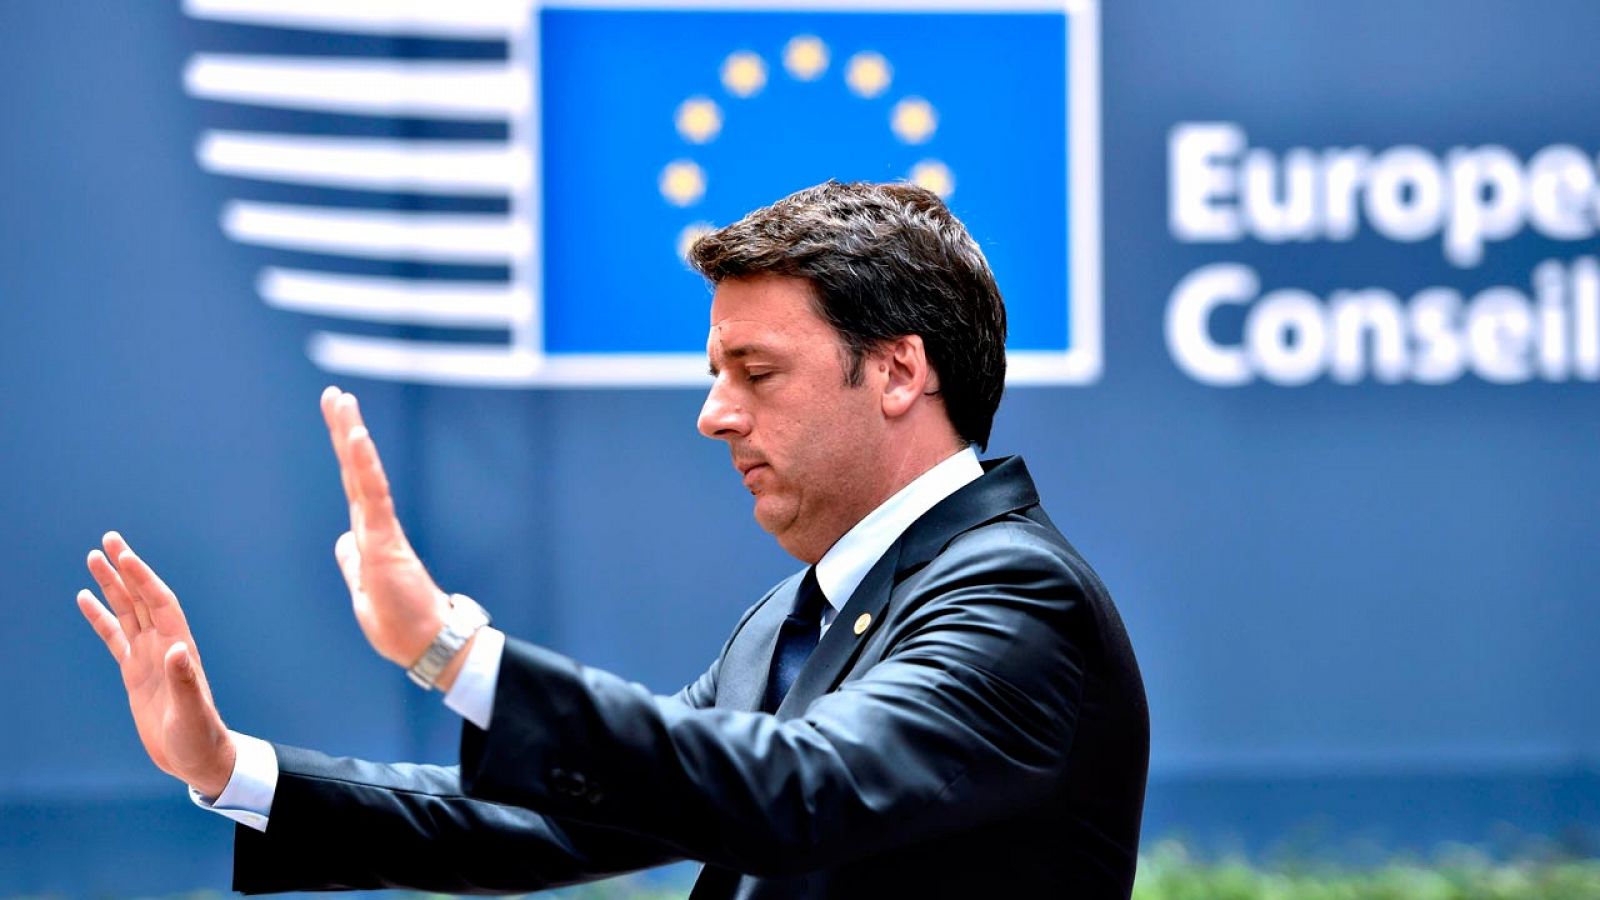 El ex primer ministro de Italia, Matteo Renzi, durante una reunión del Consejo Europeo